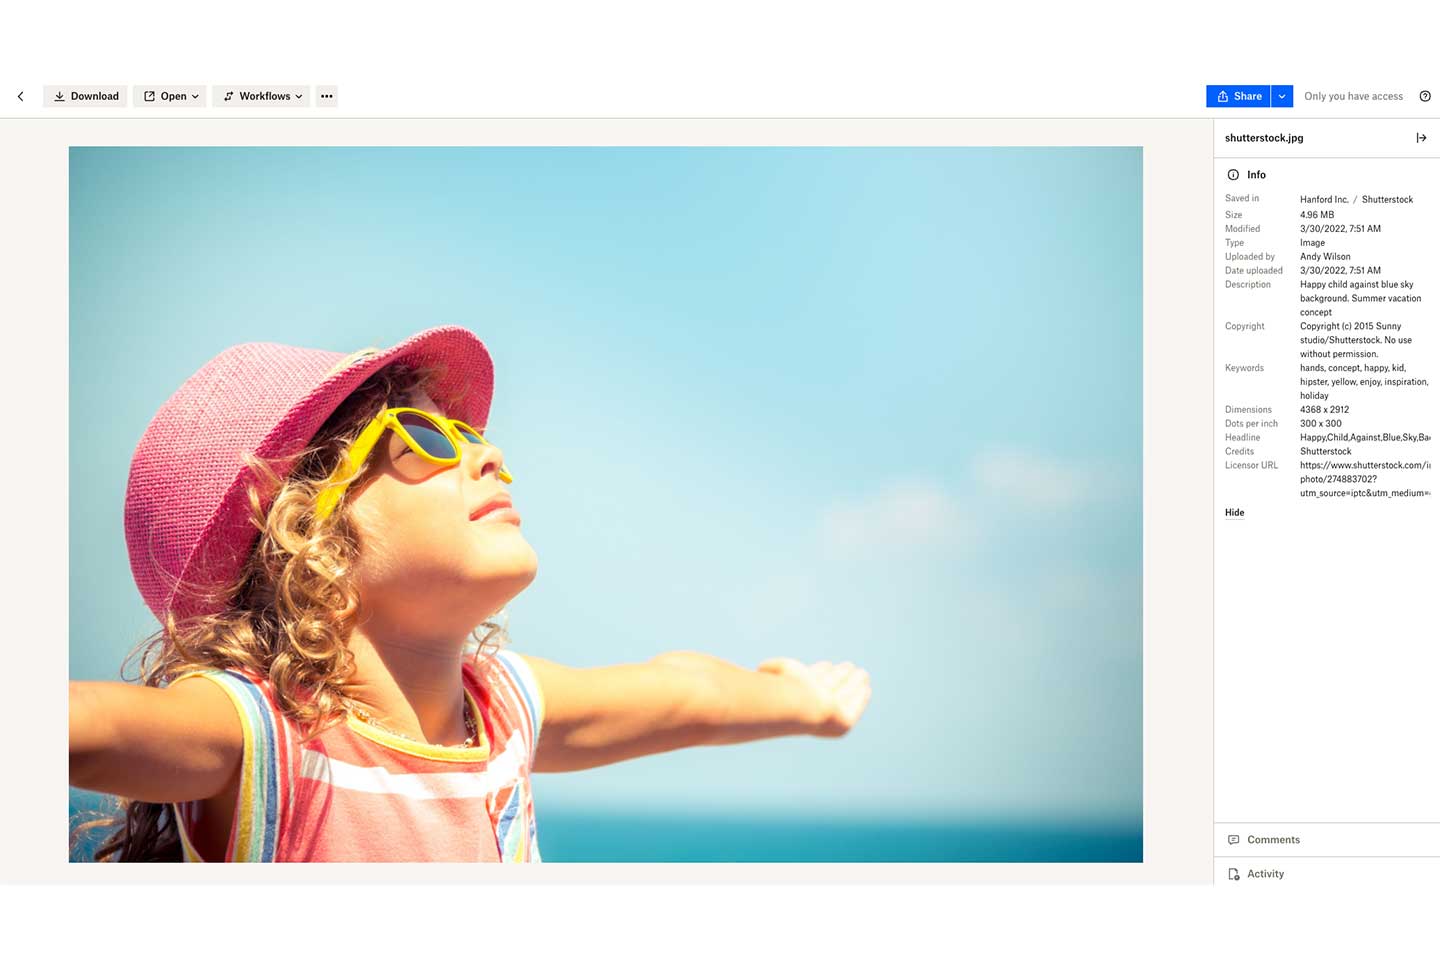 Foto de uma garotinha na praia mostrada como visualização prévia do Dropbox com detalhes da imagem na barra lateral direita